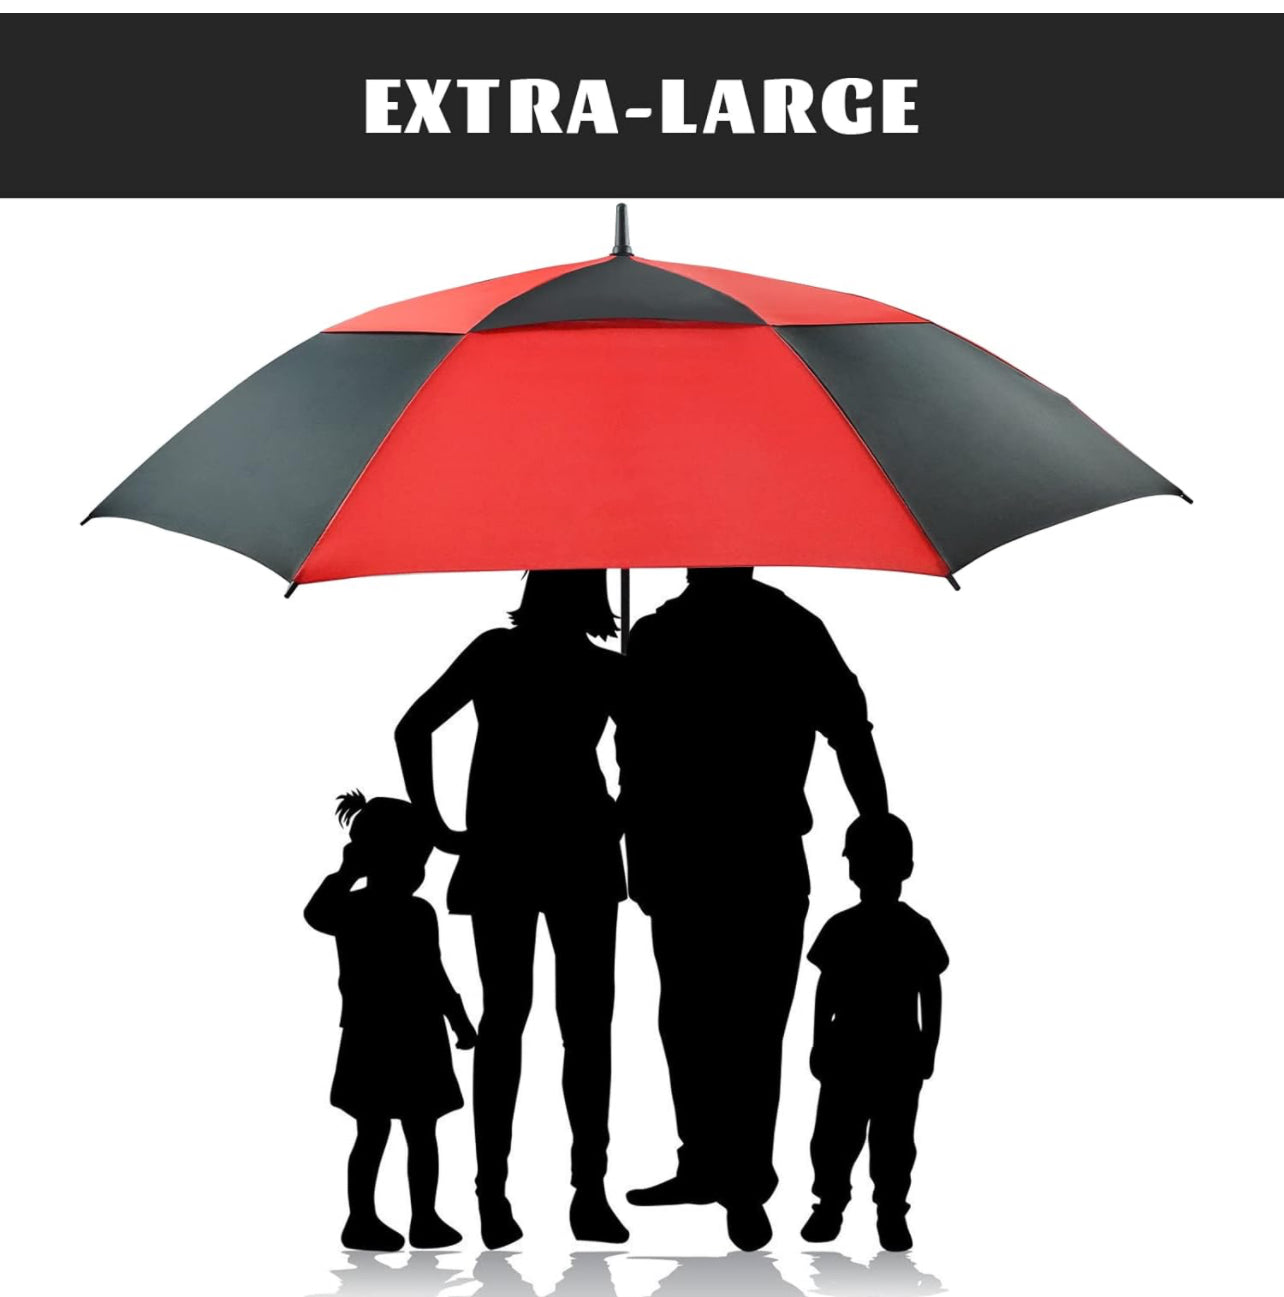 Oversized umbrella (It's HUGE!)